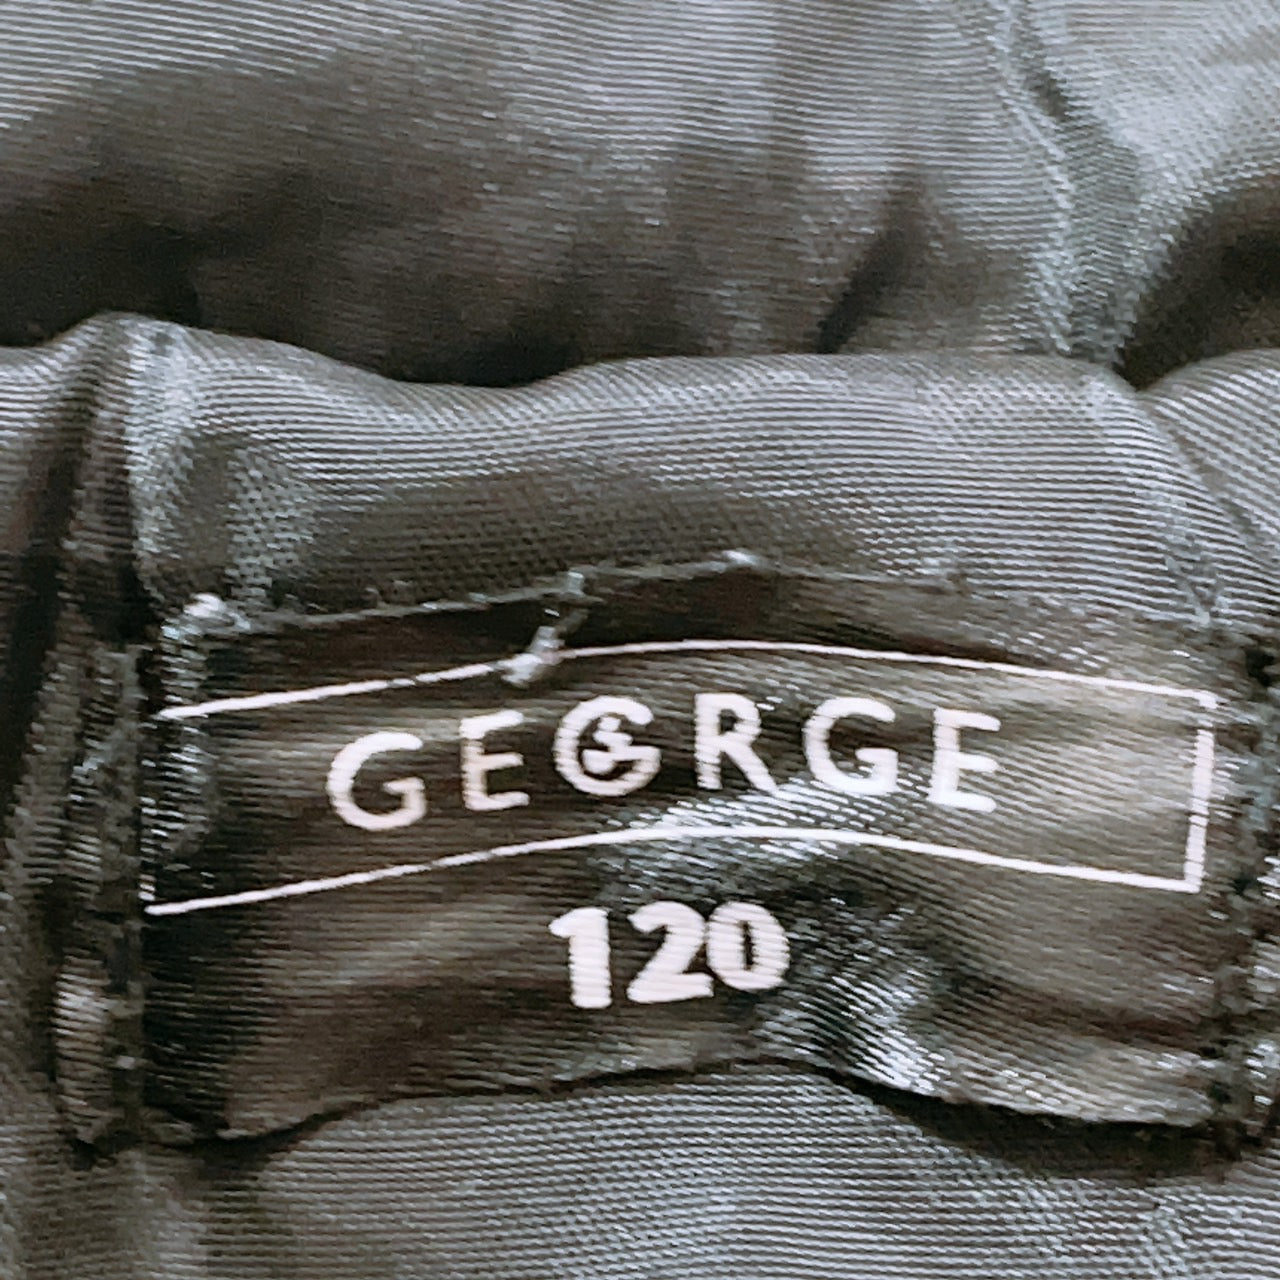 【27966】 GEORGE ジョージ ベスト サイズ120 レッド ノースリーブジャケット フードジャケット ジップアップ 中綿 防寒着 キッズ